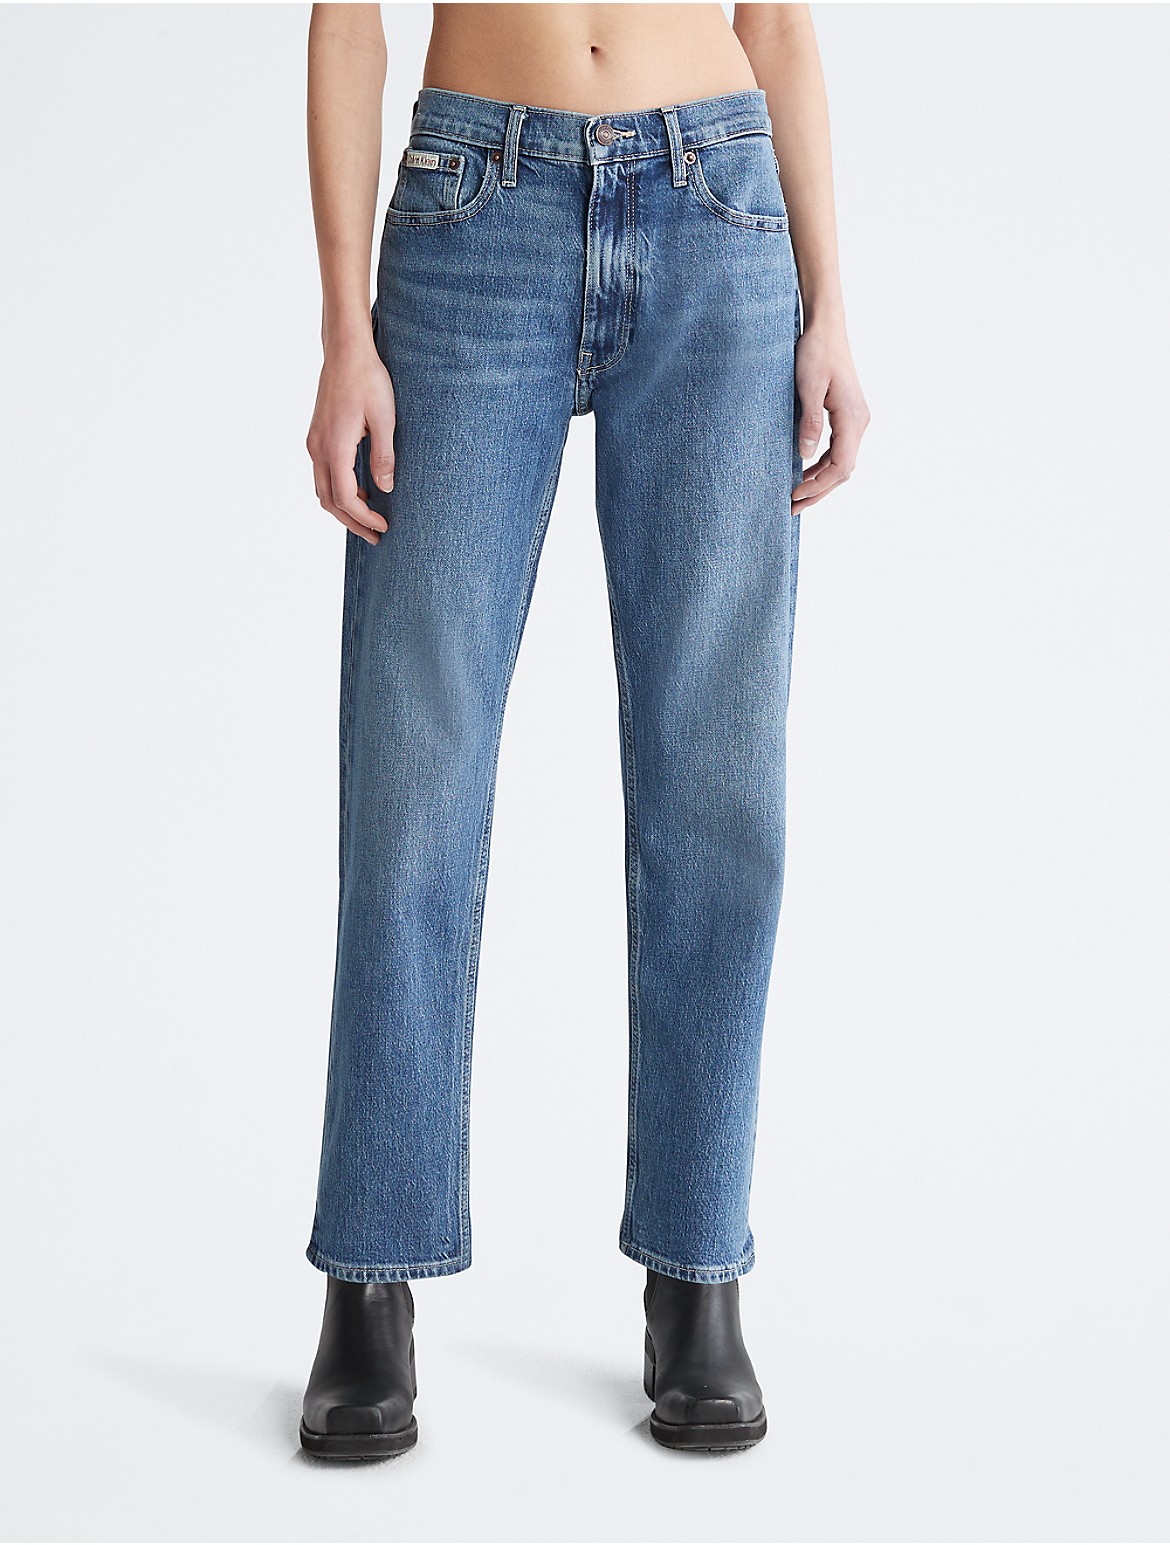 Calvin Klein Women's Original Straight Comfort Stretch Jeans - Blue - 26